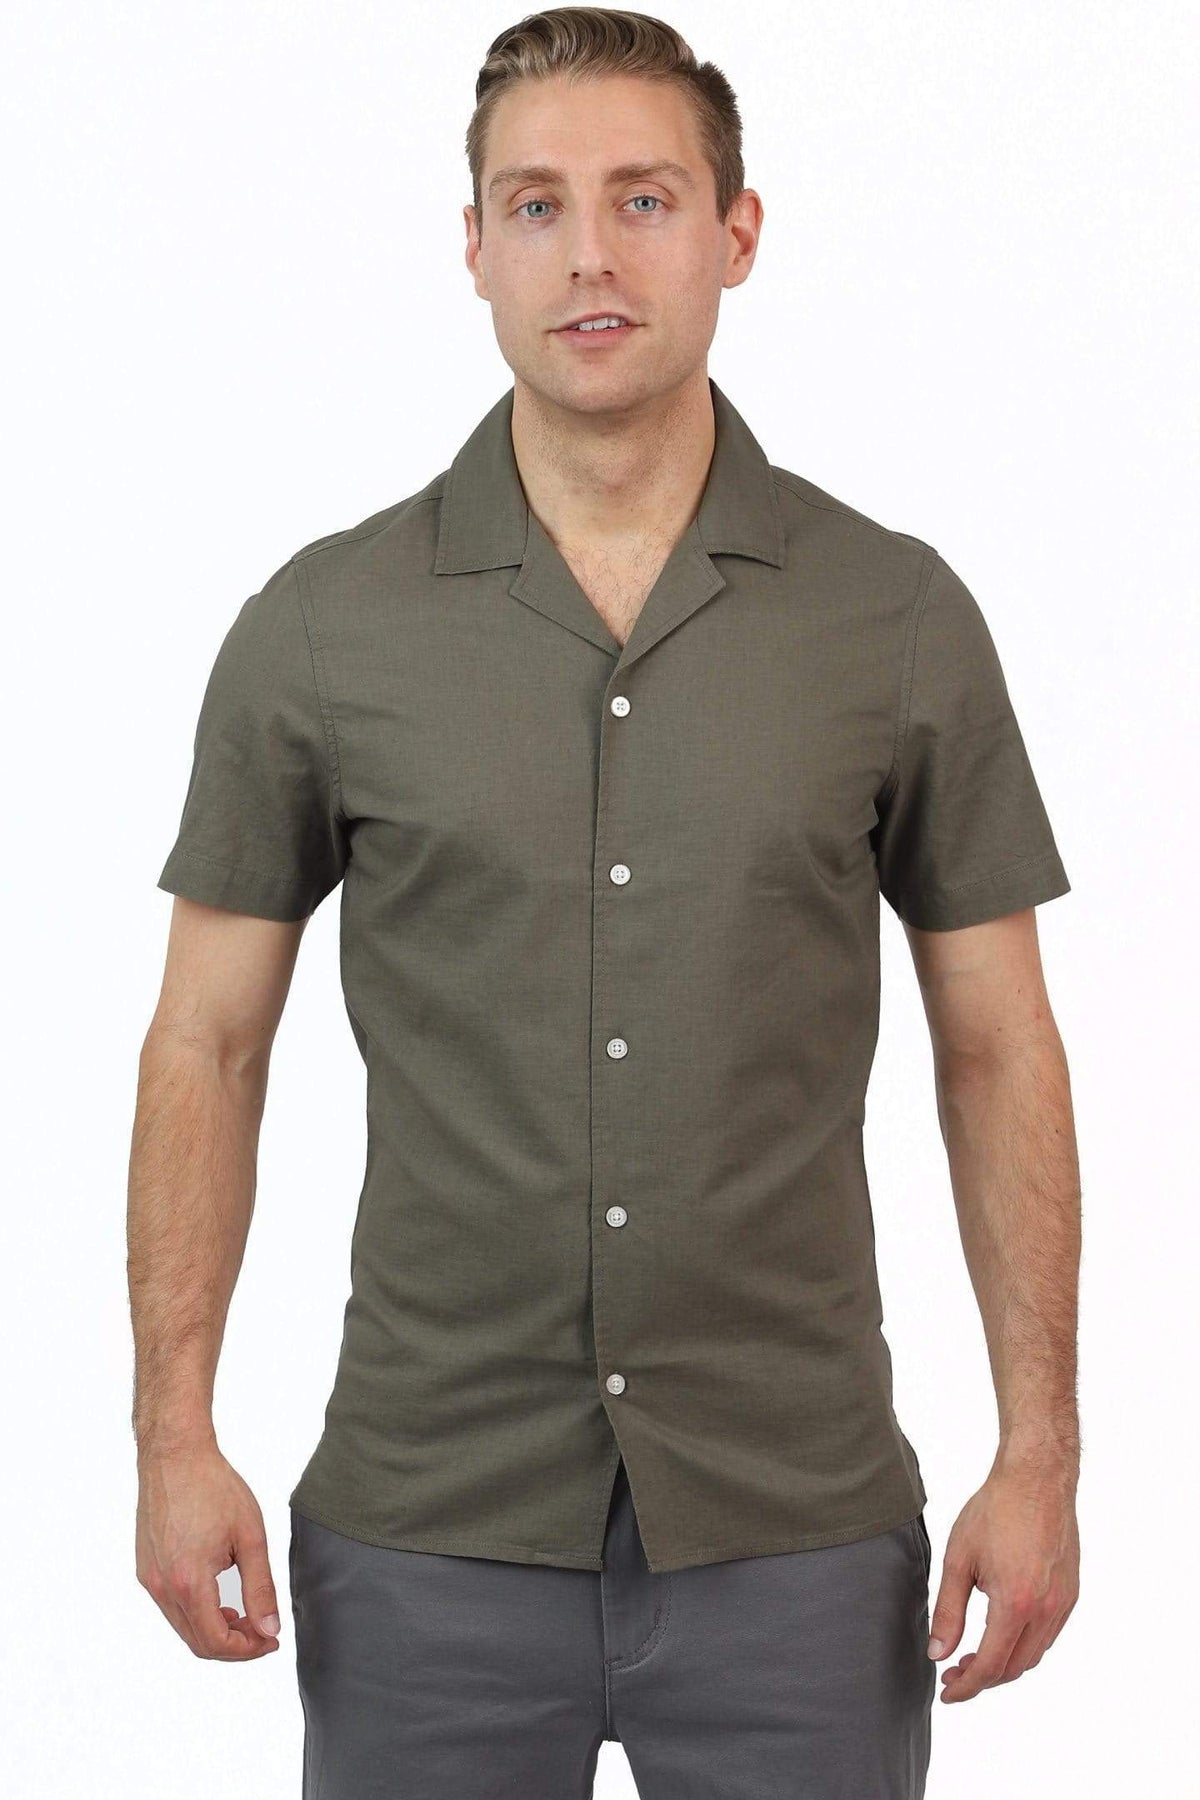 Ash & Erie Canopy Green Open Collar Shirt for Short Men | Ash & Erie